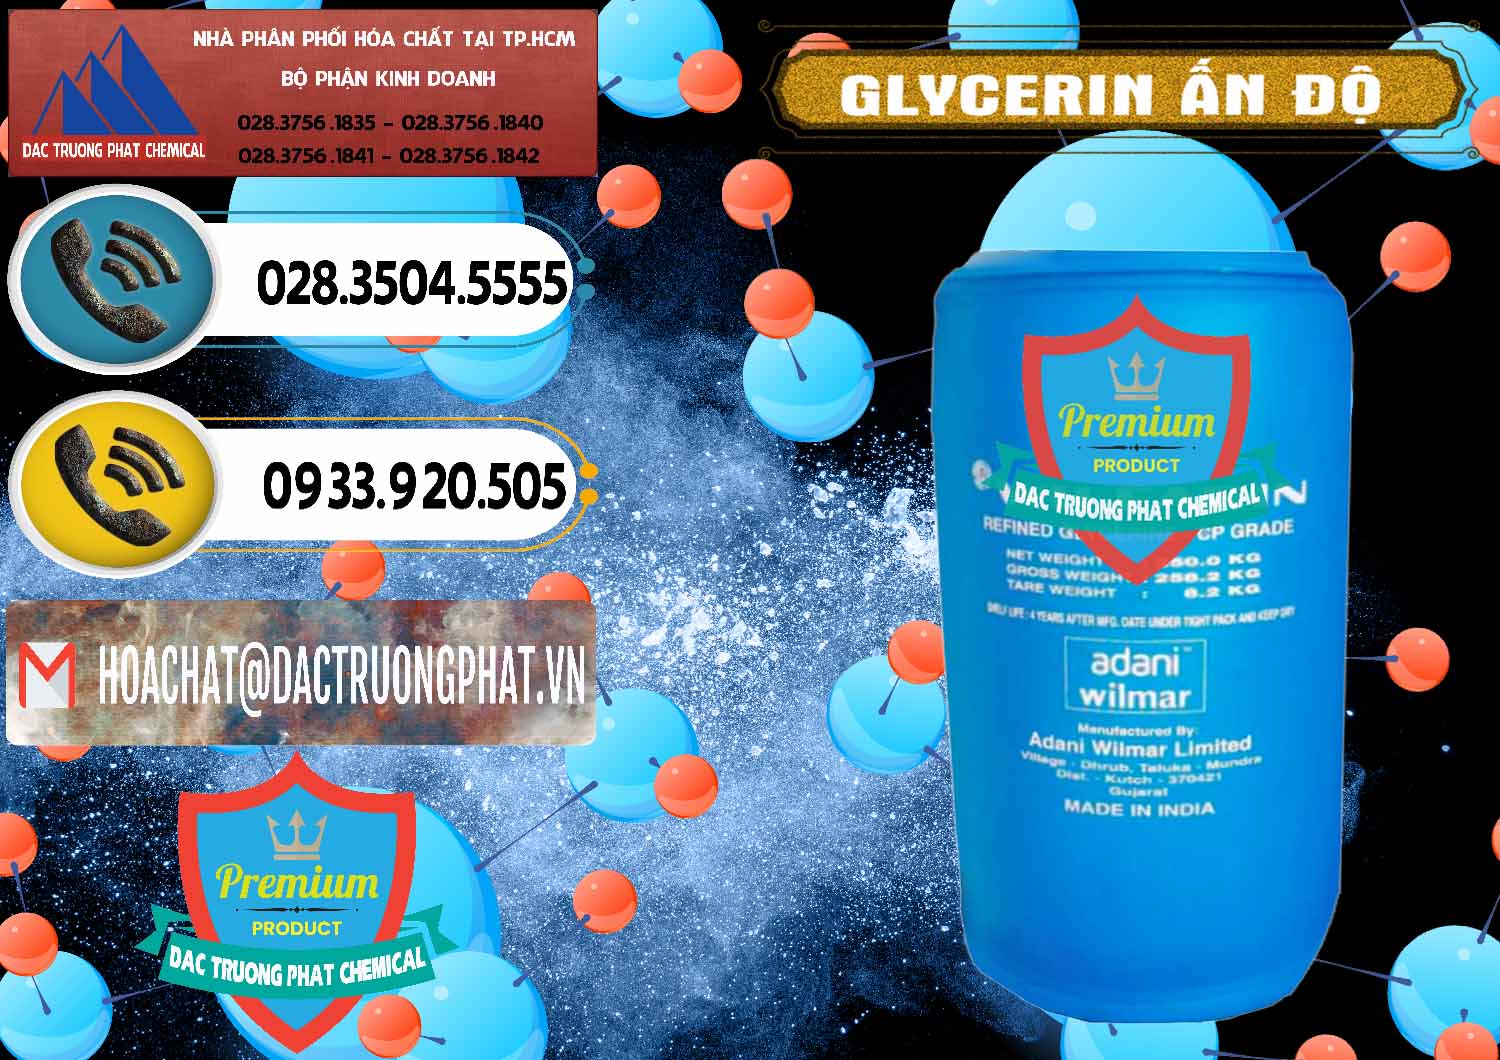 Cty chuyên bán _ cung ứng Glycerin – C3H8O3 Ấn Độ India - 0365 - Đơn vị chuyên nhập khẩu _ phân phối hóa chất tại TP.HCM - hoachatdetnhuom.vn